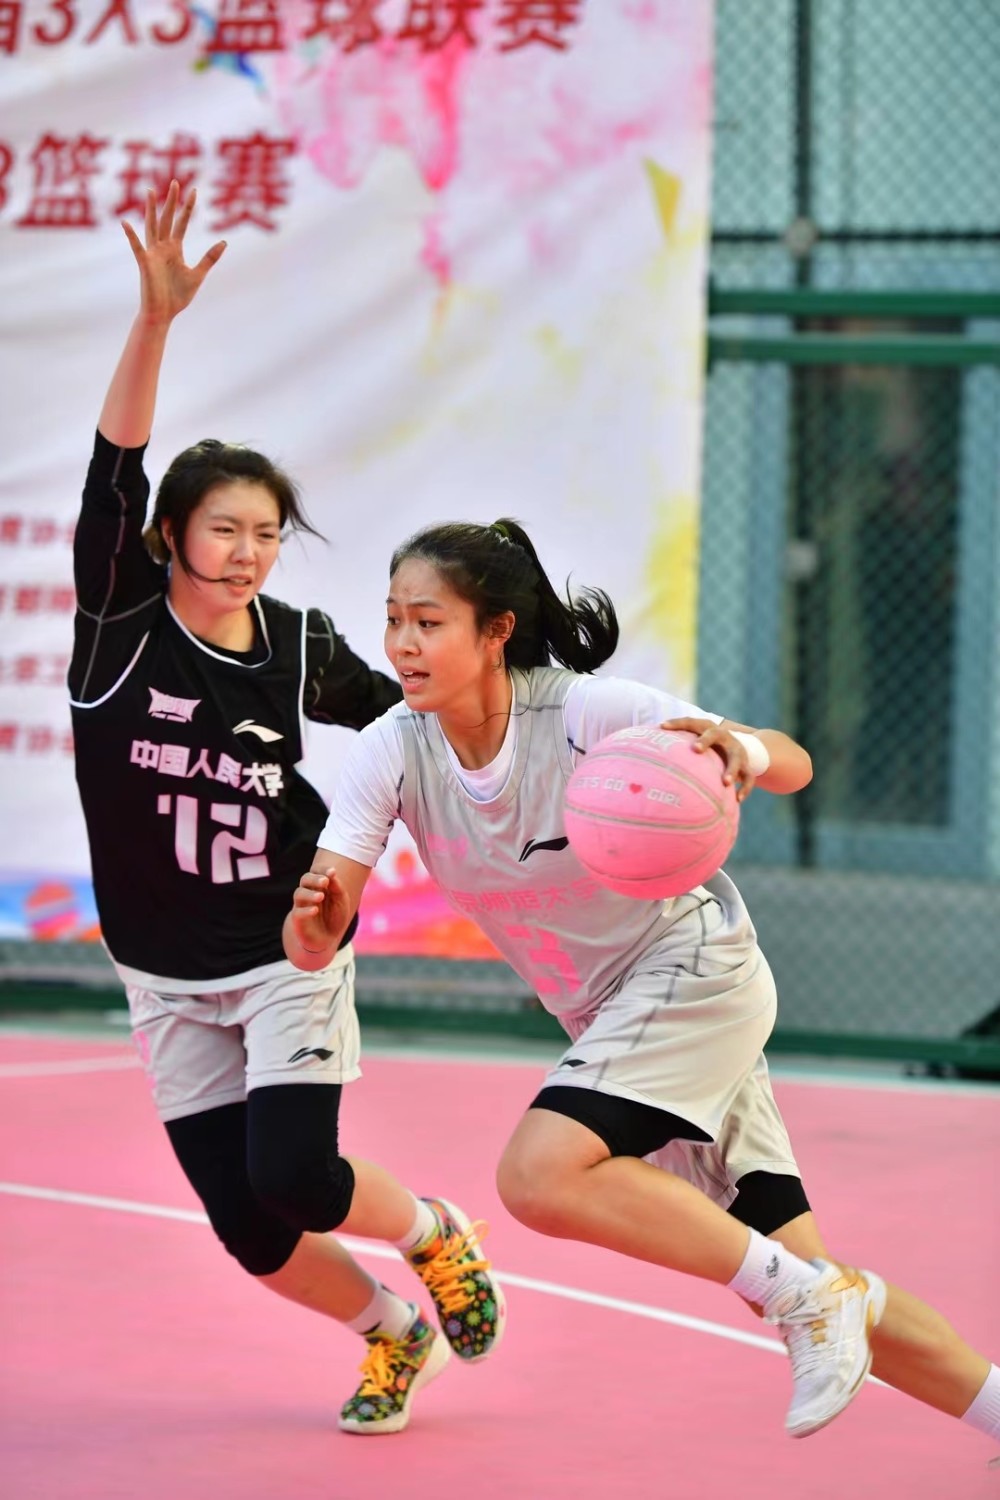 青春力量绽放球场粉色风暴北京高校赛在国贸拉开序幕全民优打100g流量城市